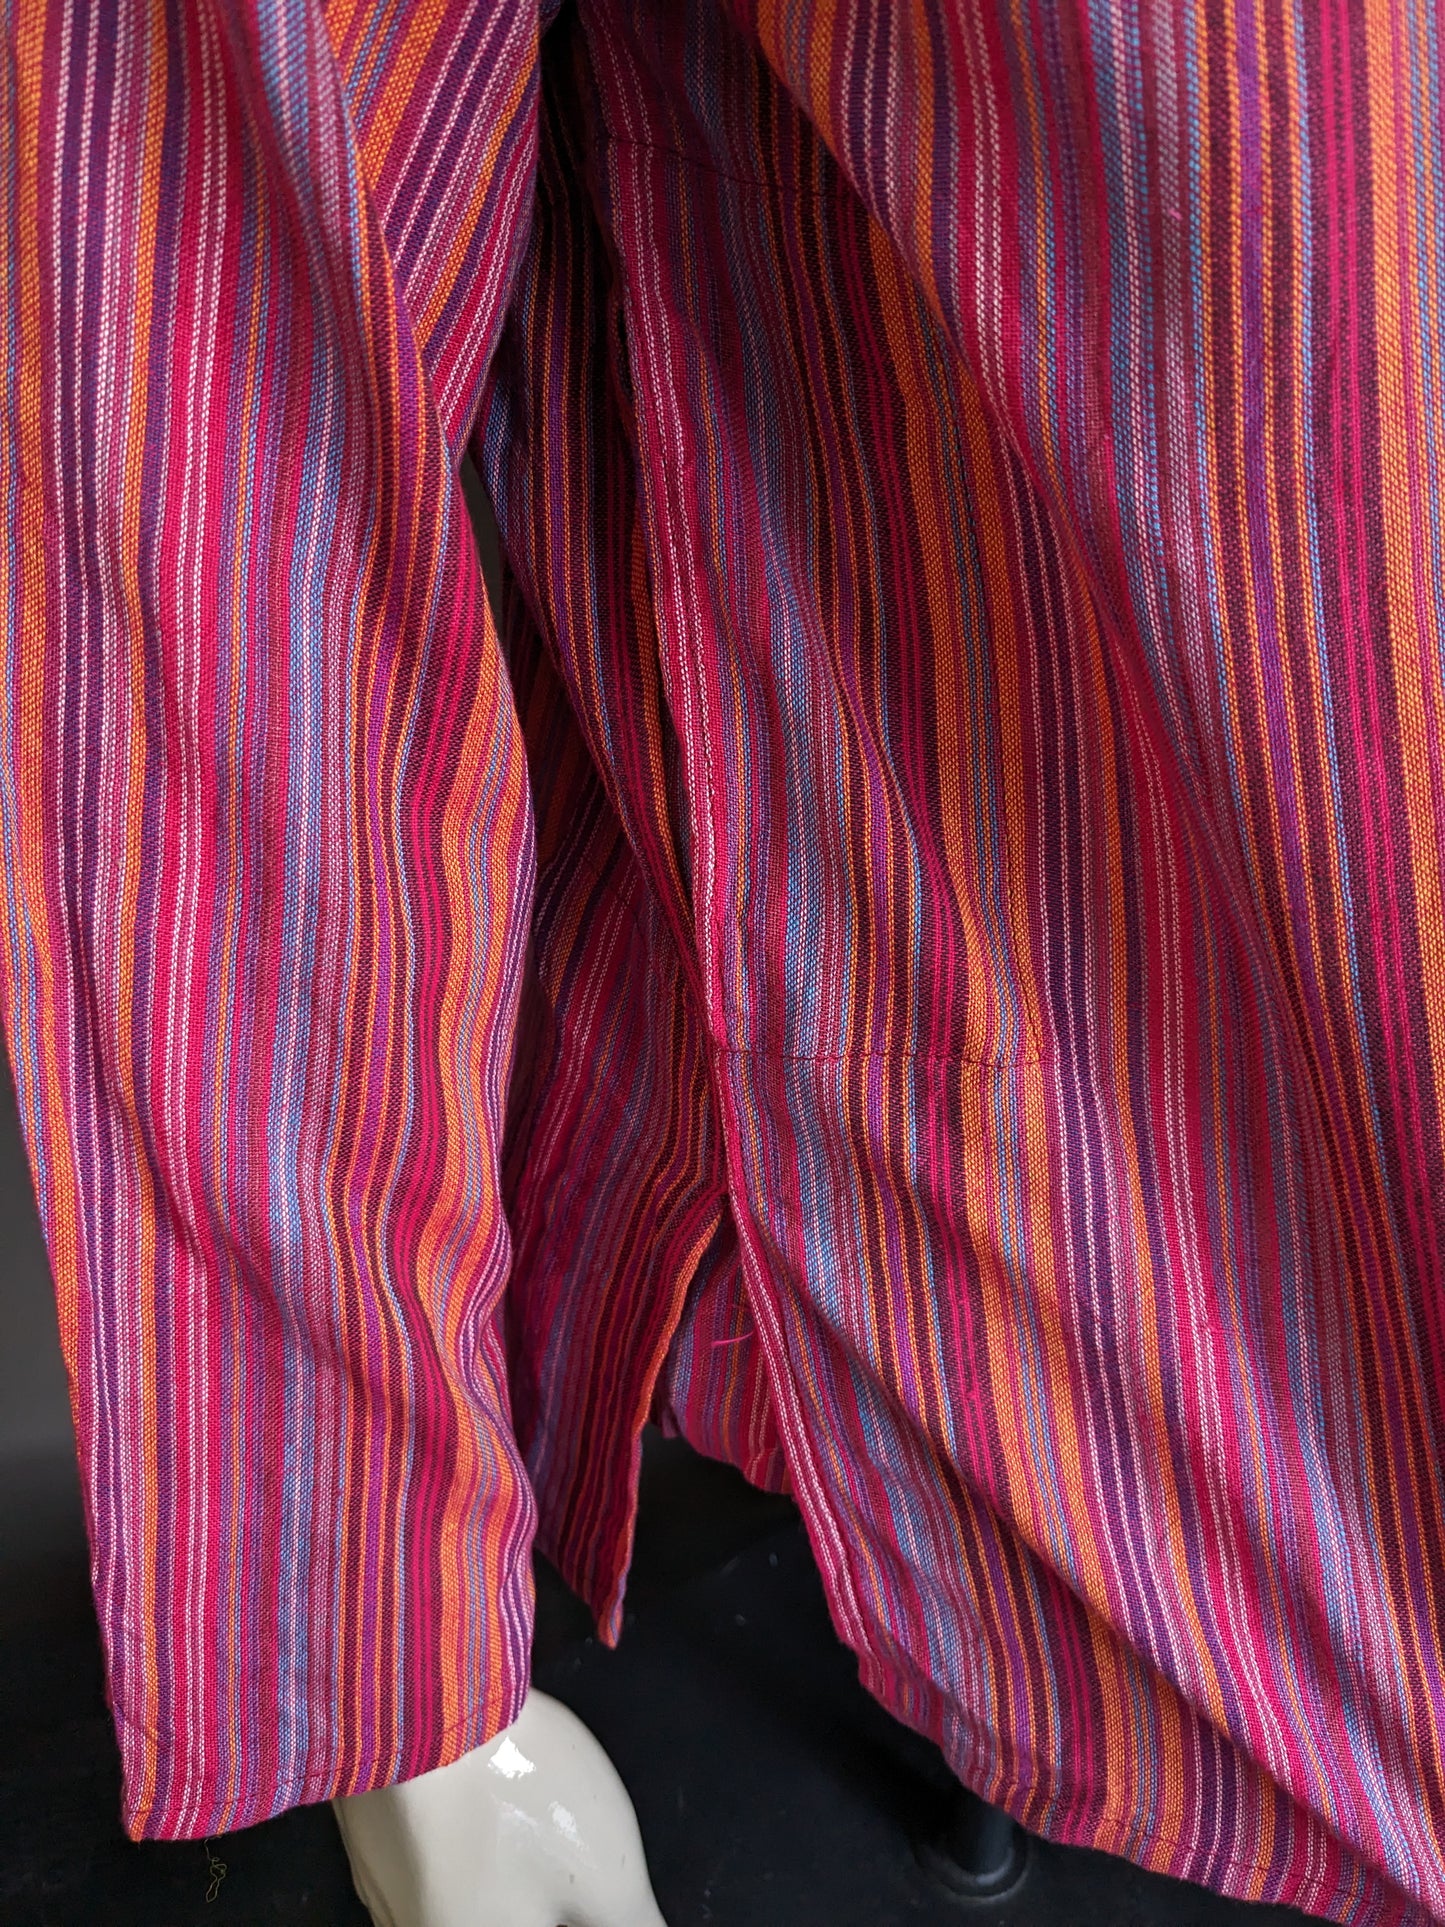 Vintage Modas Baghdad Polotrui / chemise avec mao / collier debout / fermier. Rayé rouge / coloré. Taille L.